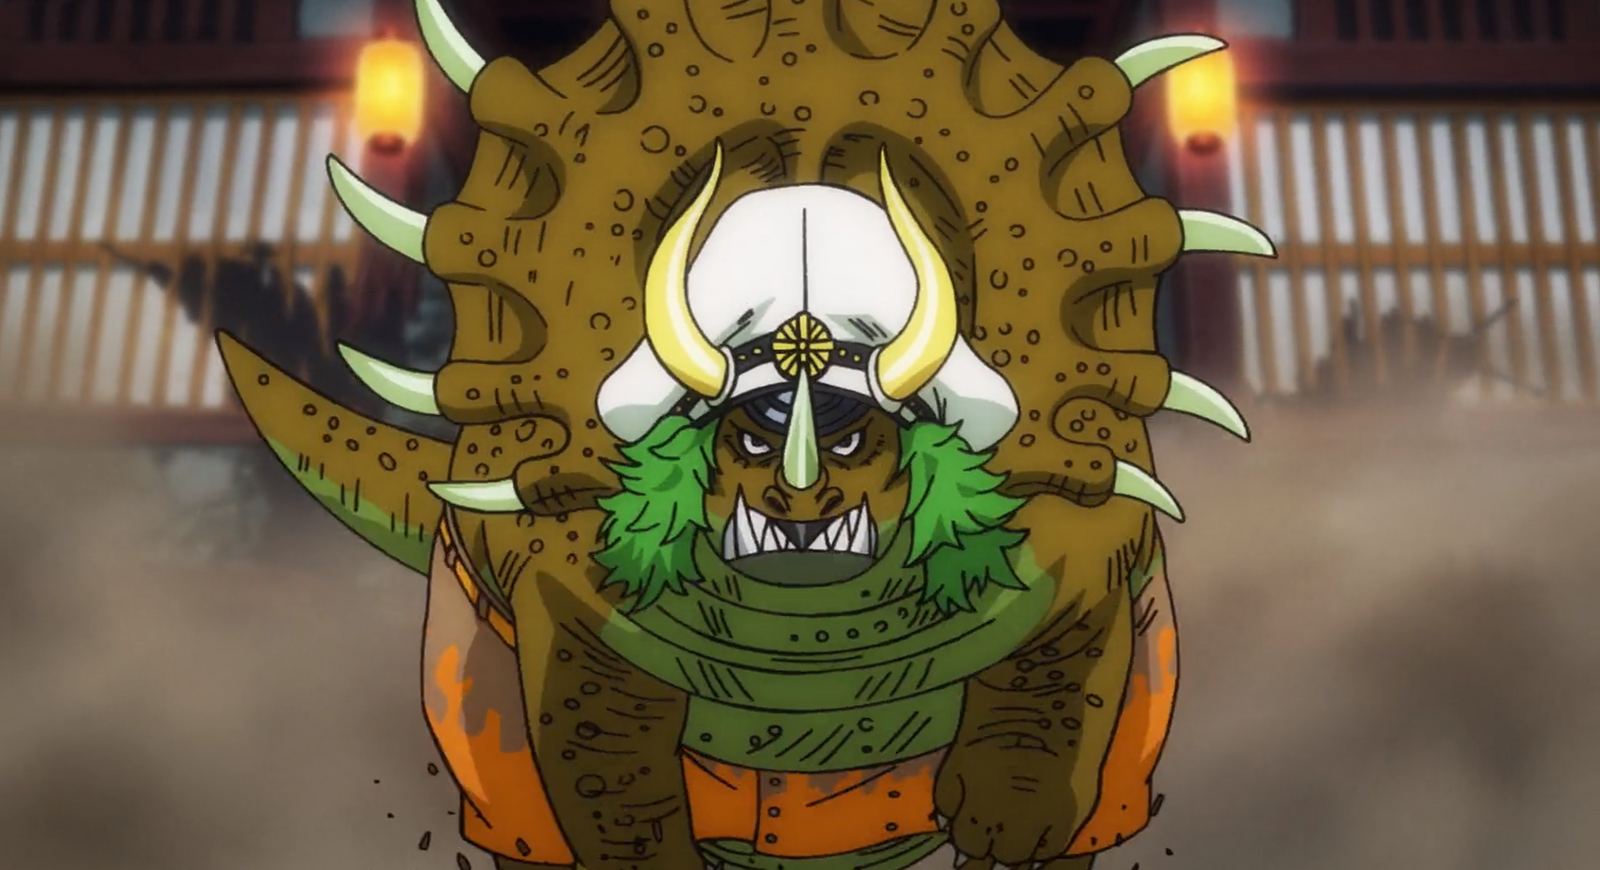 Sasaki in One Piece Episode 1,020